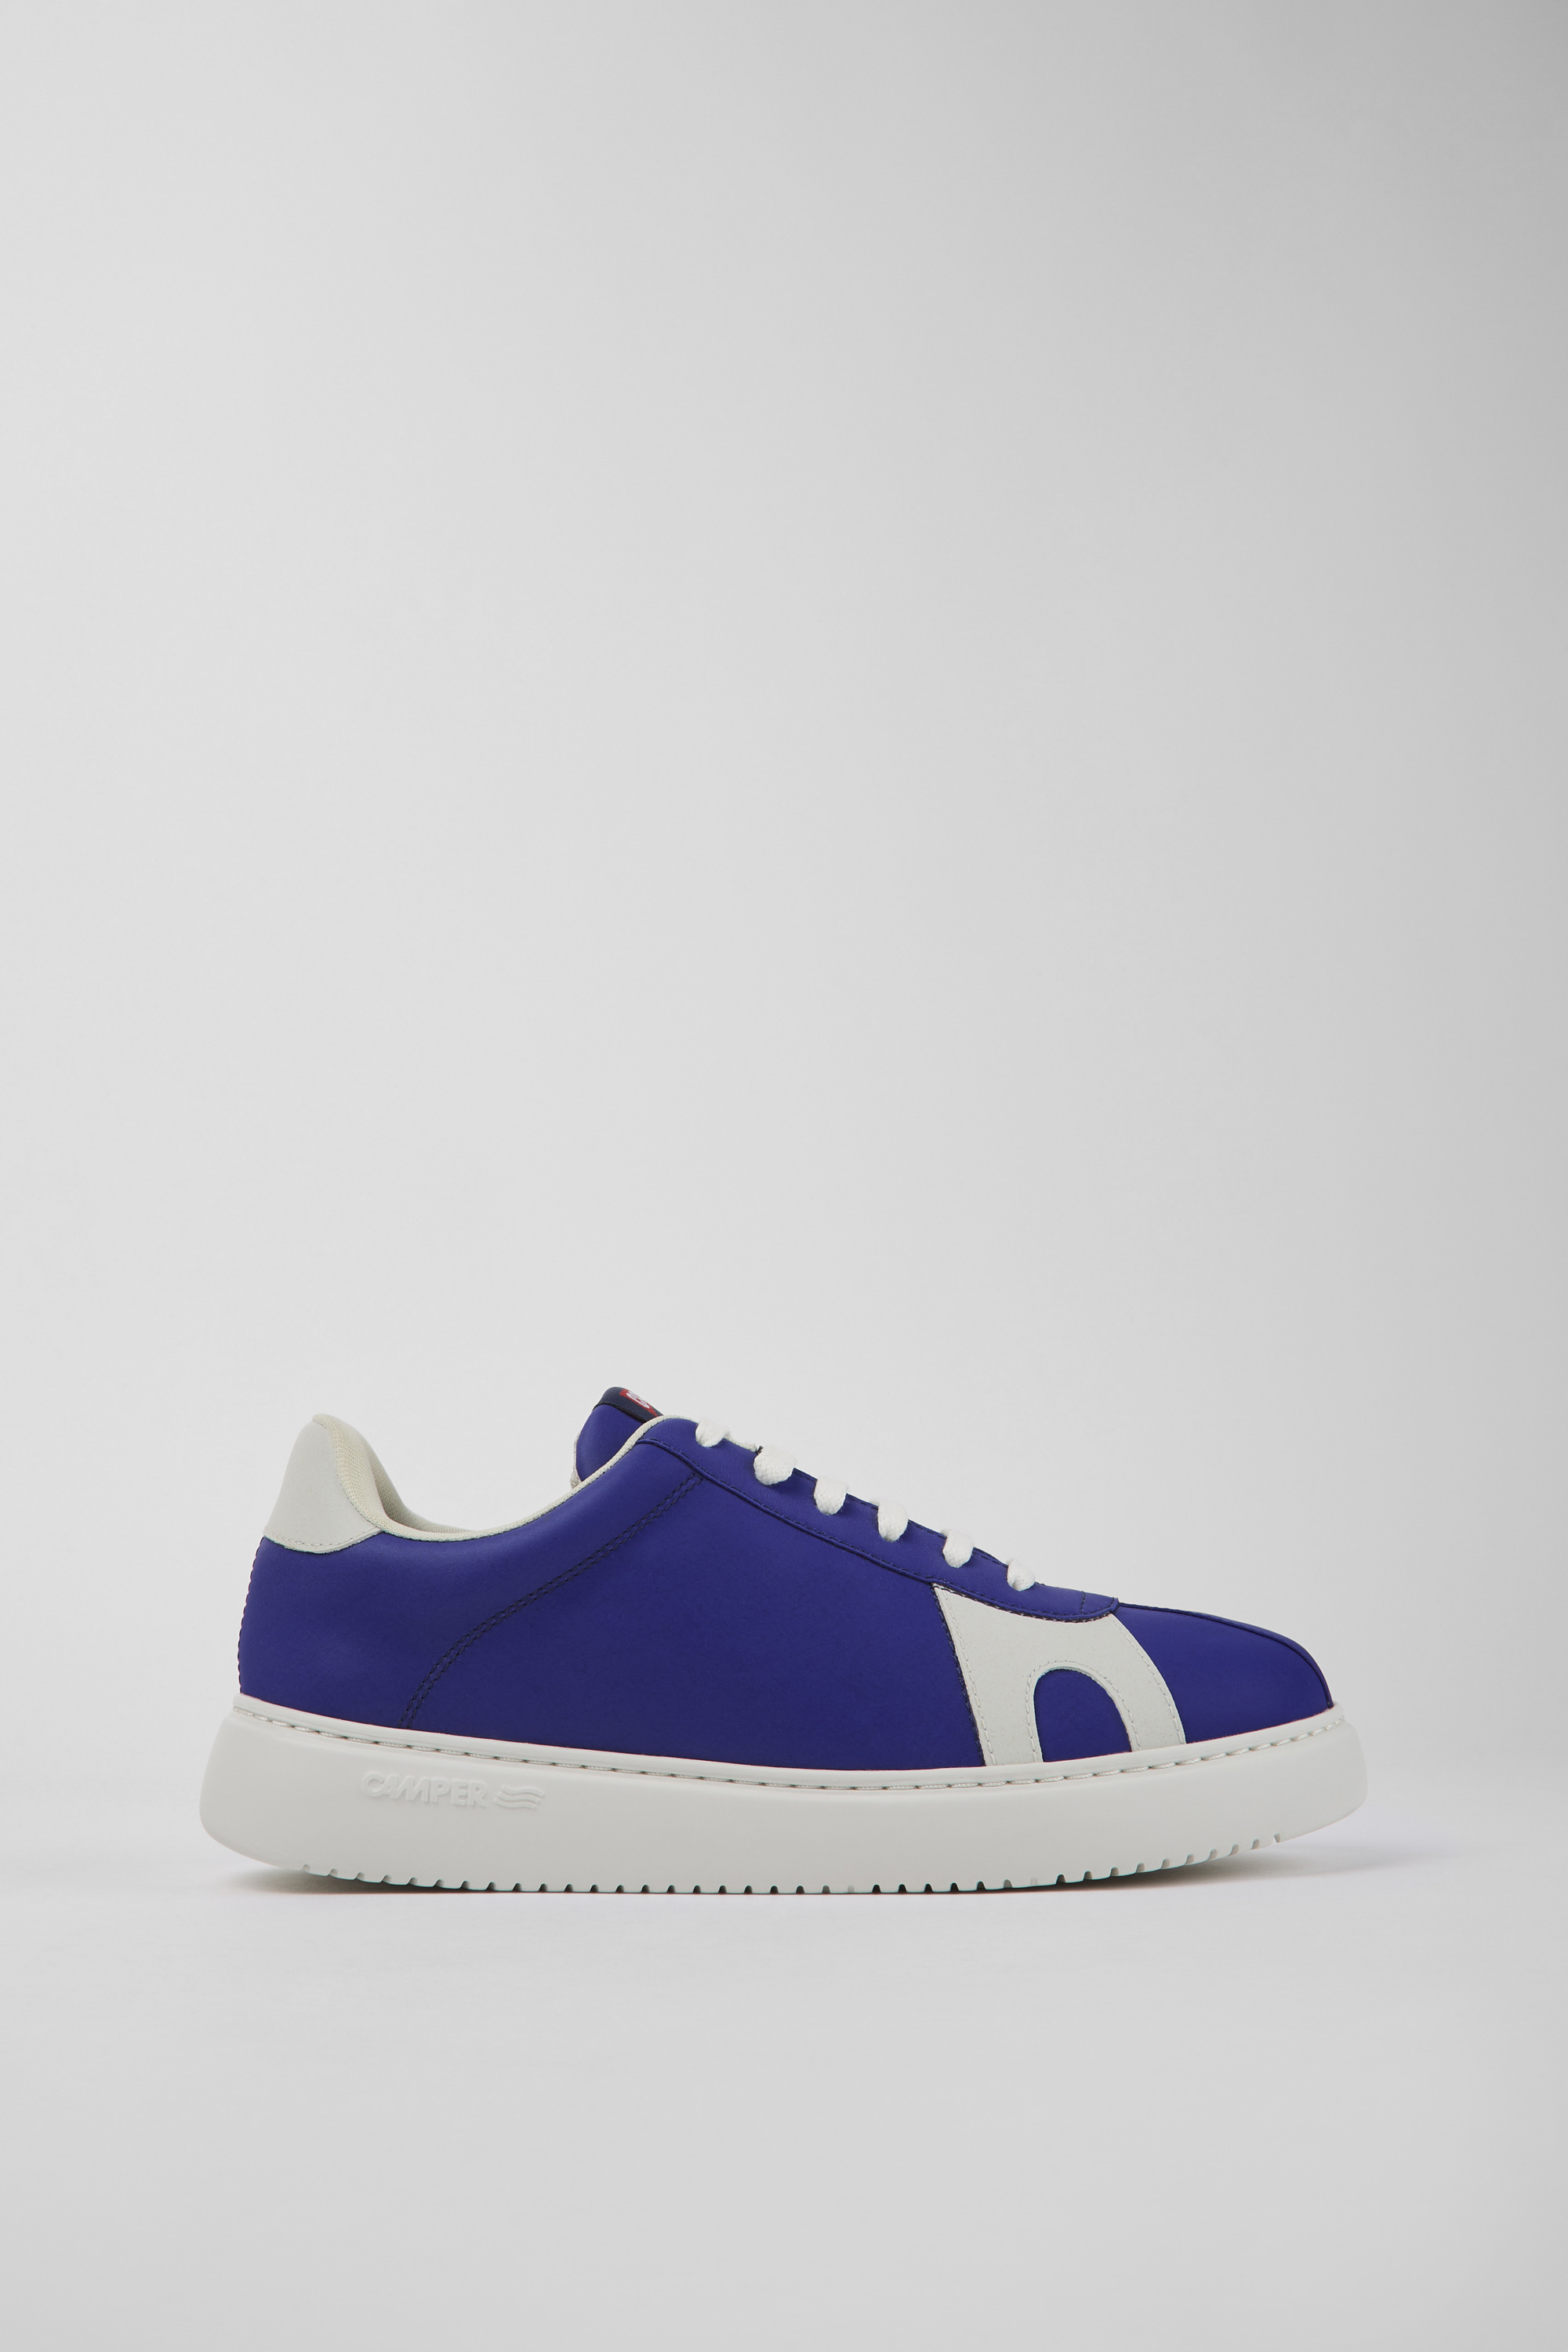 Runner K21 MIRUM - Blue and white MIRUM textile sneakers for men